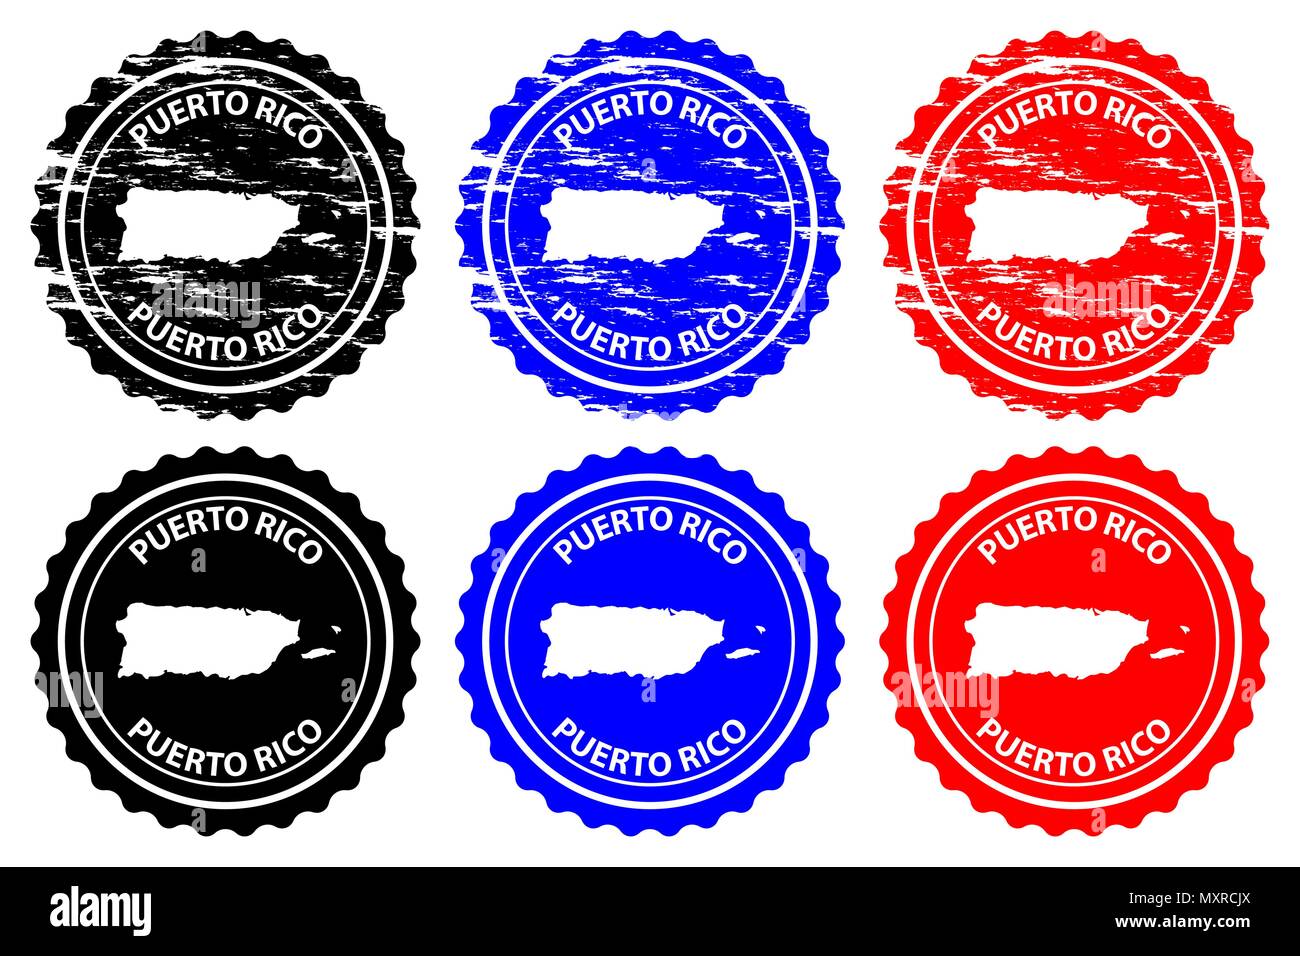 Puerto Rico (Porto Rico) - timbres en caoutchouc - vecteur, Commonwealth de Puerto Rico island carte - sticker - noir, bleu et rouge Illustration de Vecteur